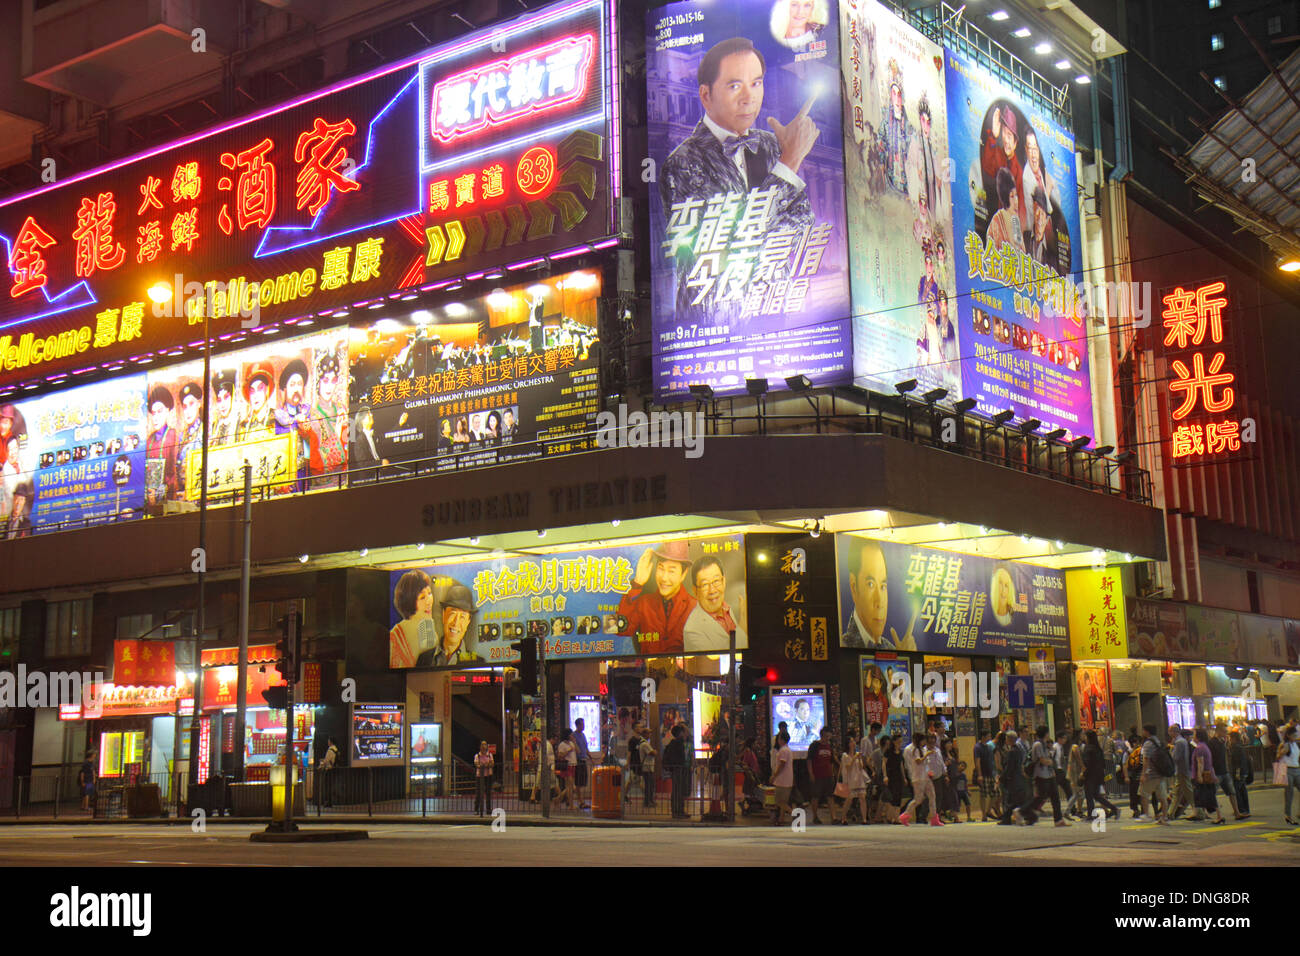 Hongkong China, Hongkong, Asien, Chinesisch, Orientalisch, Insel, North Point, King's Road, Nacht, riesige Werbetafeln, Werbung, Anzeigen, Neonschild, kantonesischer chinesischer Charakter Stockfoto